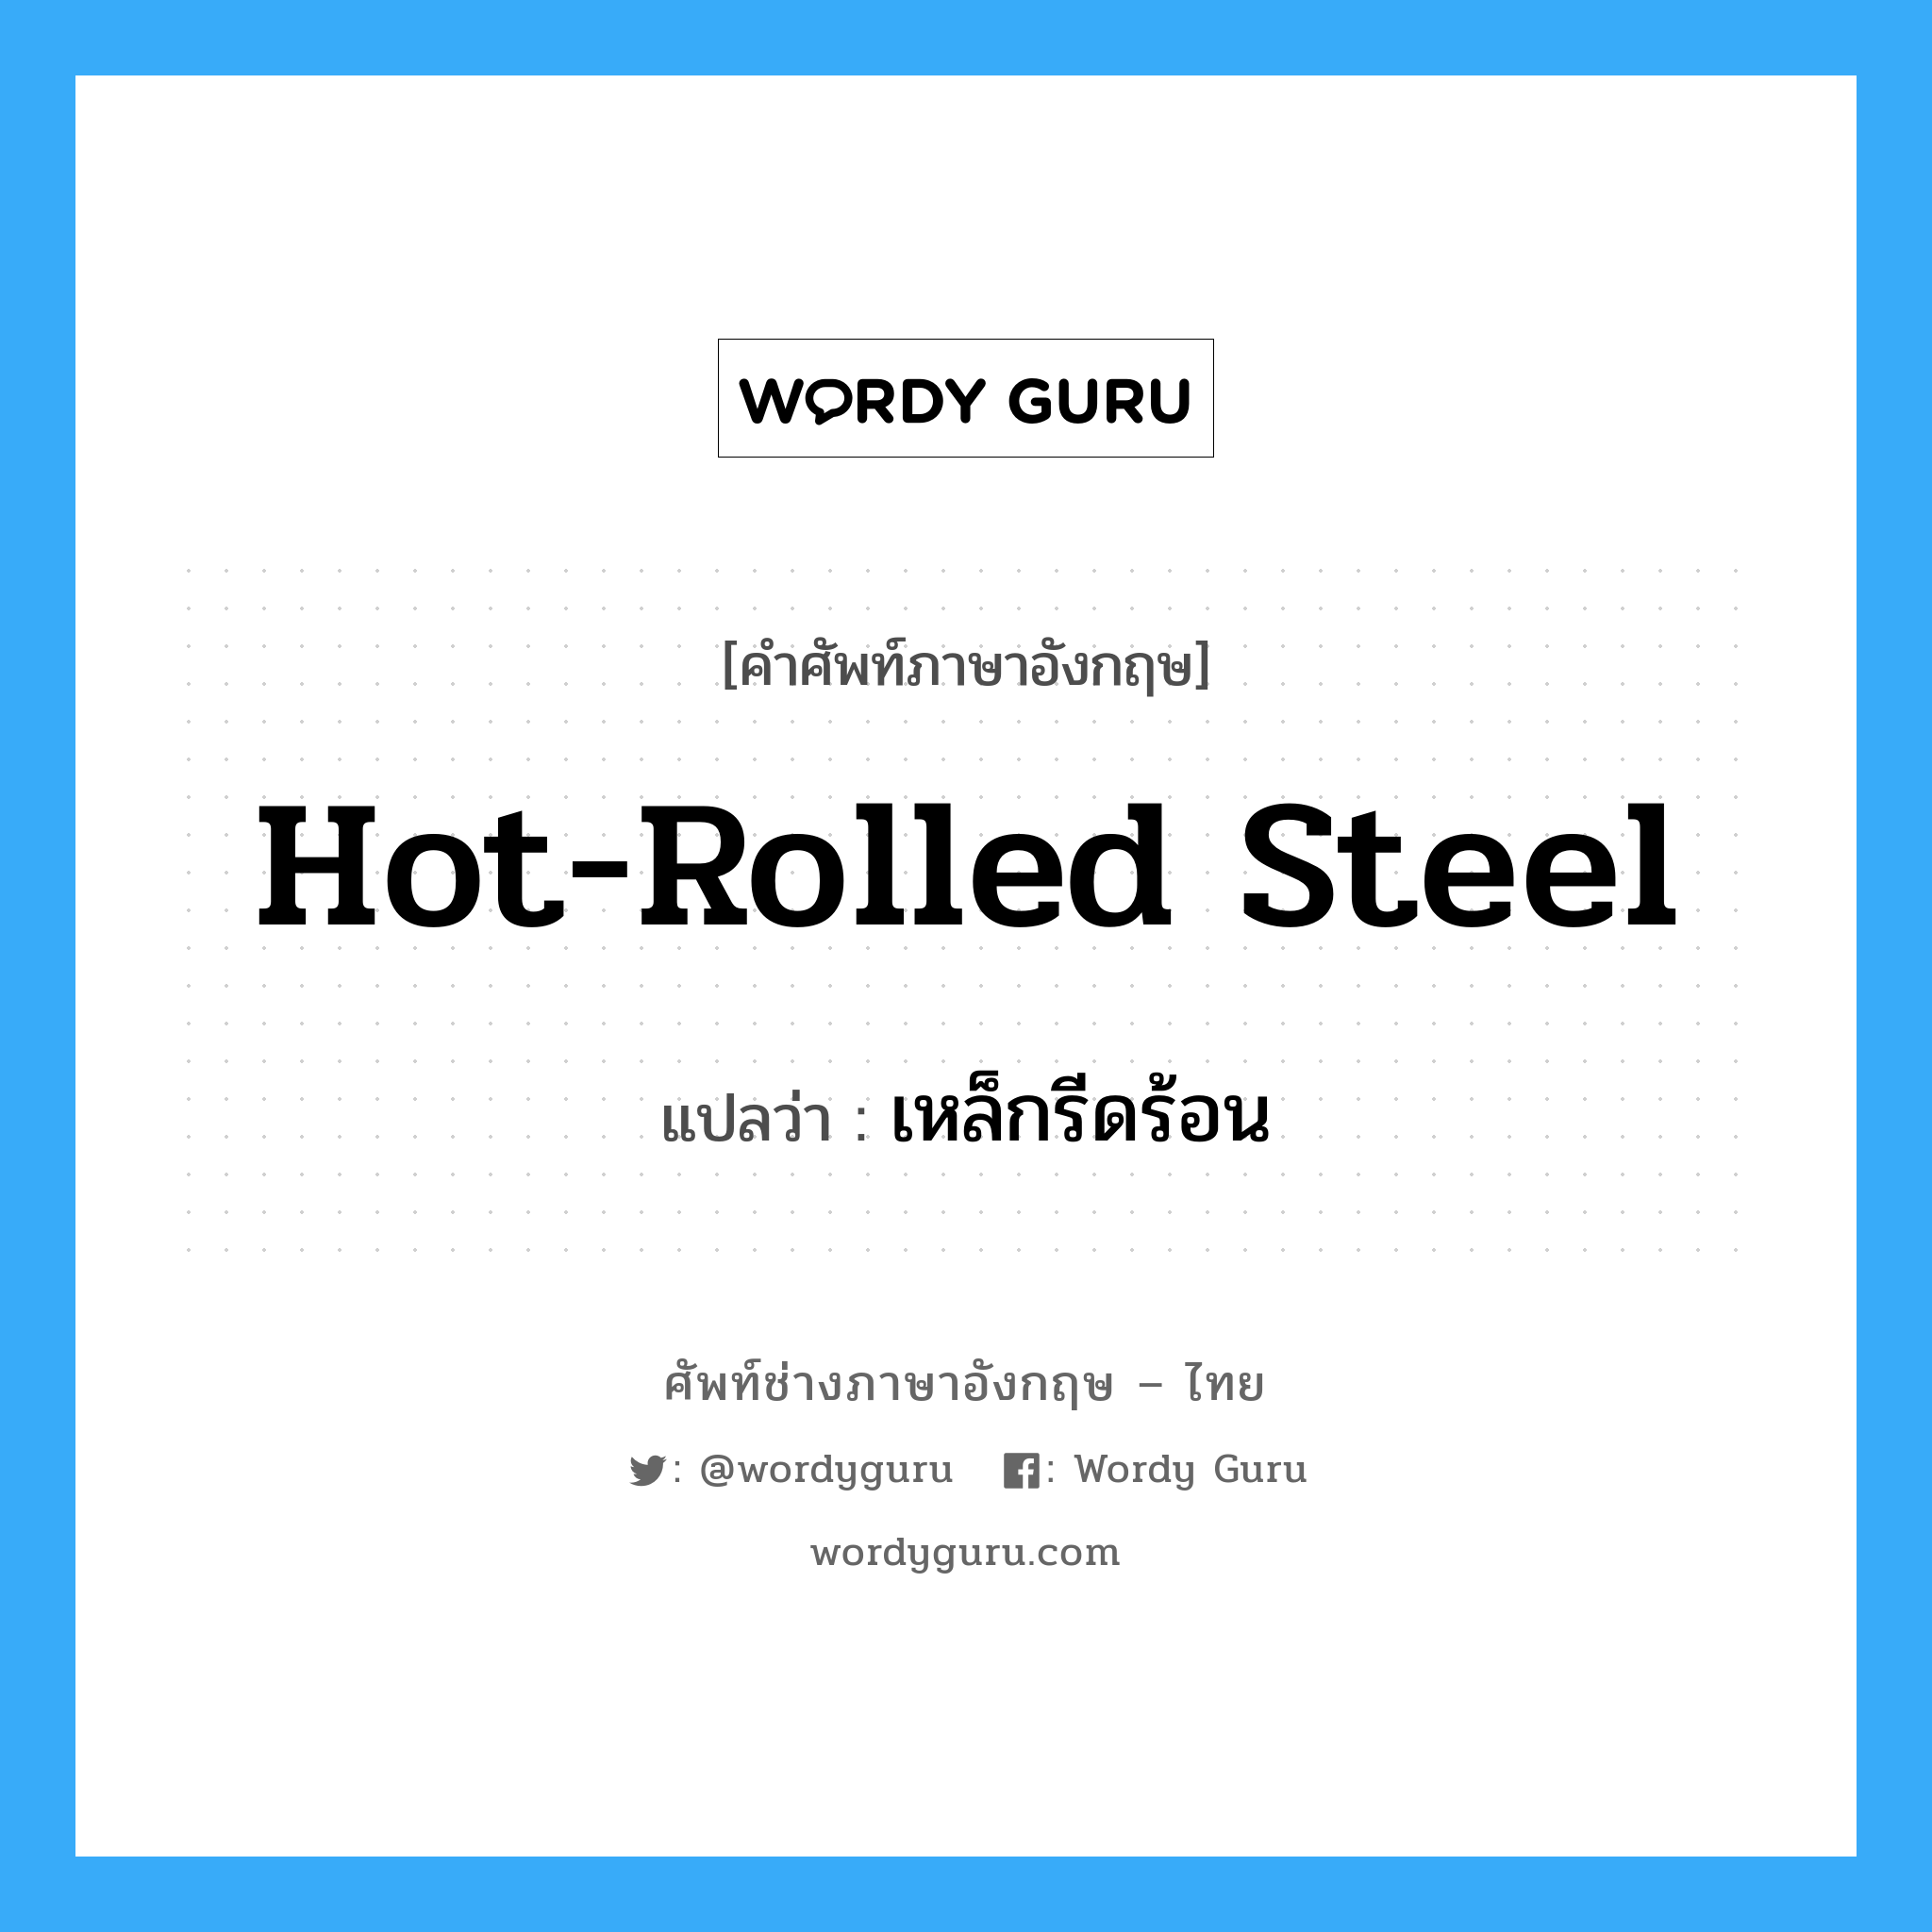 hot-rolled steel แปลว่า?, คำศัพท์ช่างภาษาอังกฤษ - ไทย hot-rolled steel คำศัพท์ภาษาอังกฤษ hot-rolled steel แปลว่า เหล็กรีดร้อน